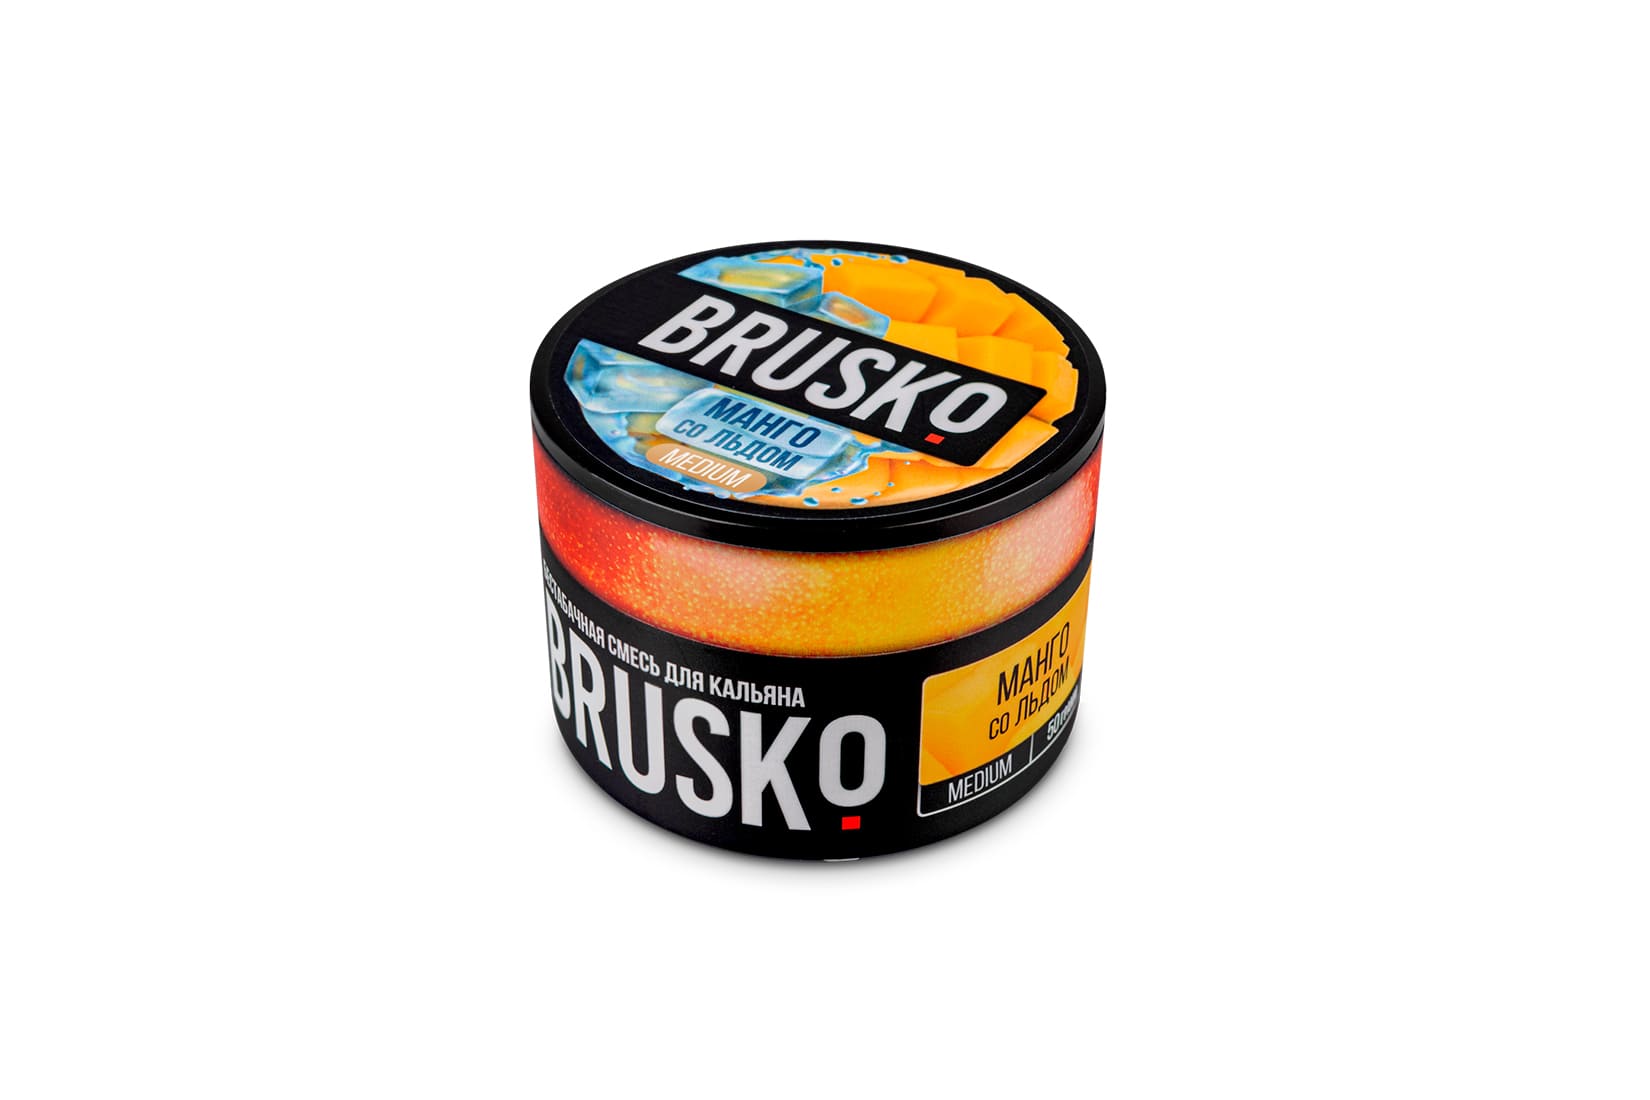 Бестабачная смесь для кальяна Brusko Манго со льдом  – описание, отзывы, миксы